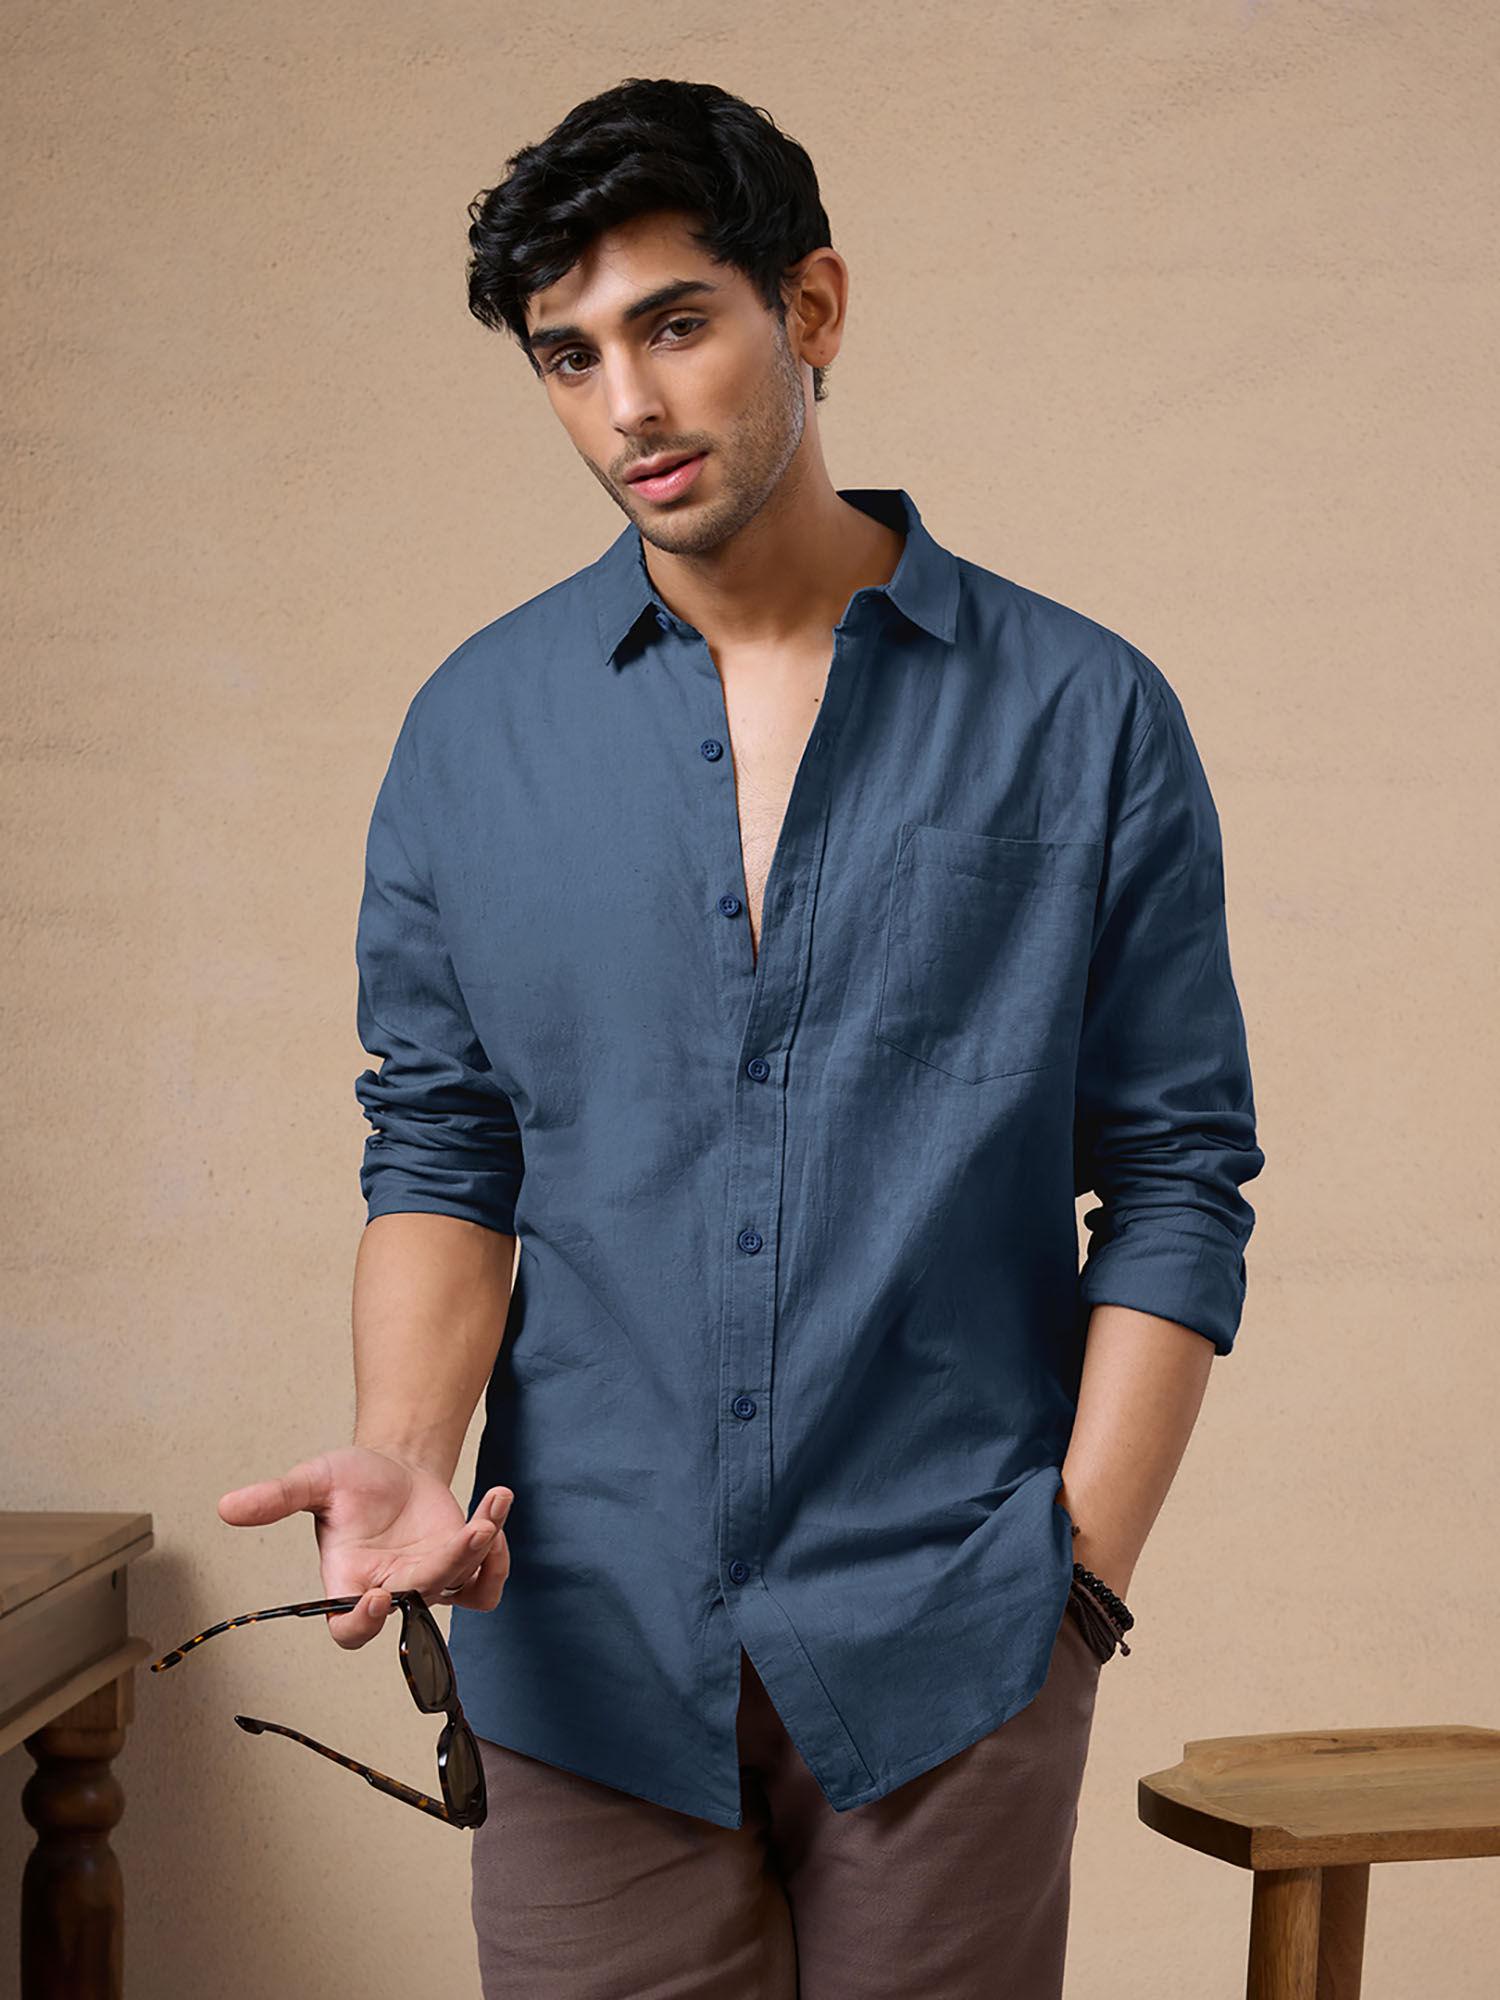 oiginal-solid-blue-cotton-linen-shirt-for-men